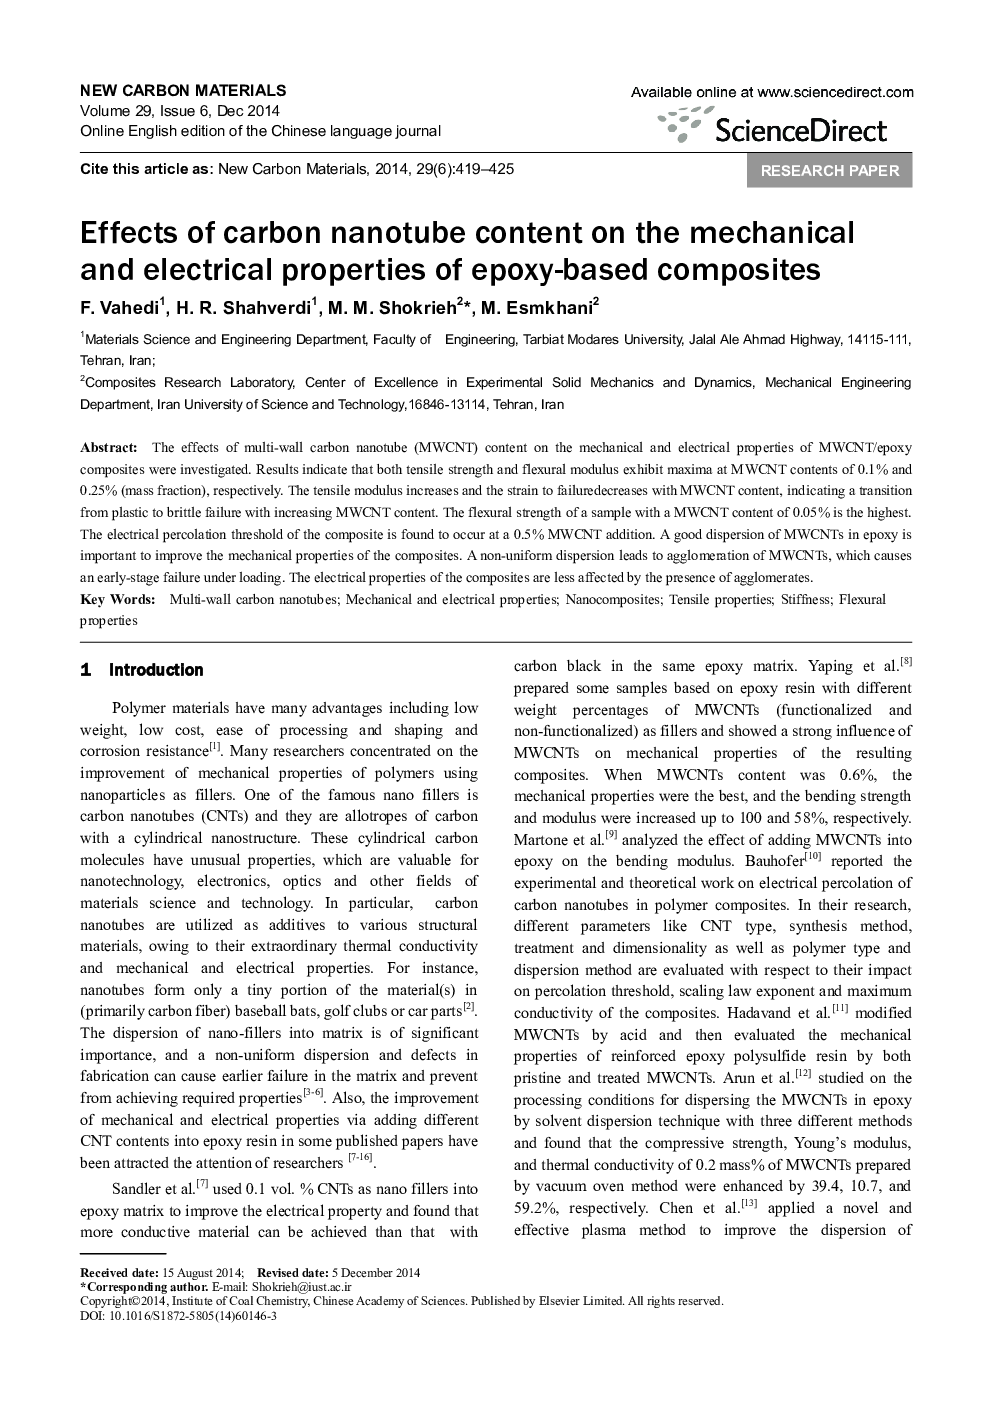 اثرات محتوای نانولوله کربن بر خواص مکانیکی و الکتریکی کامپوزیت های اپوکسی 